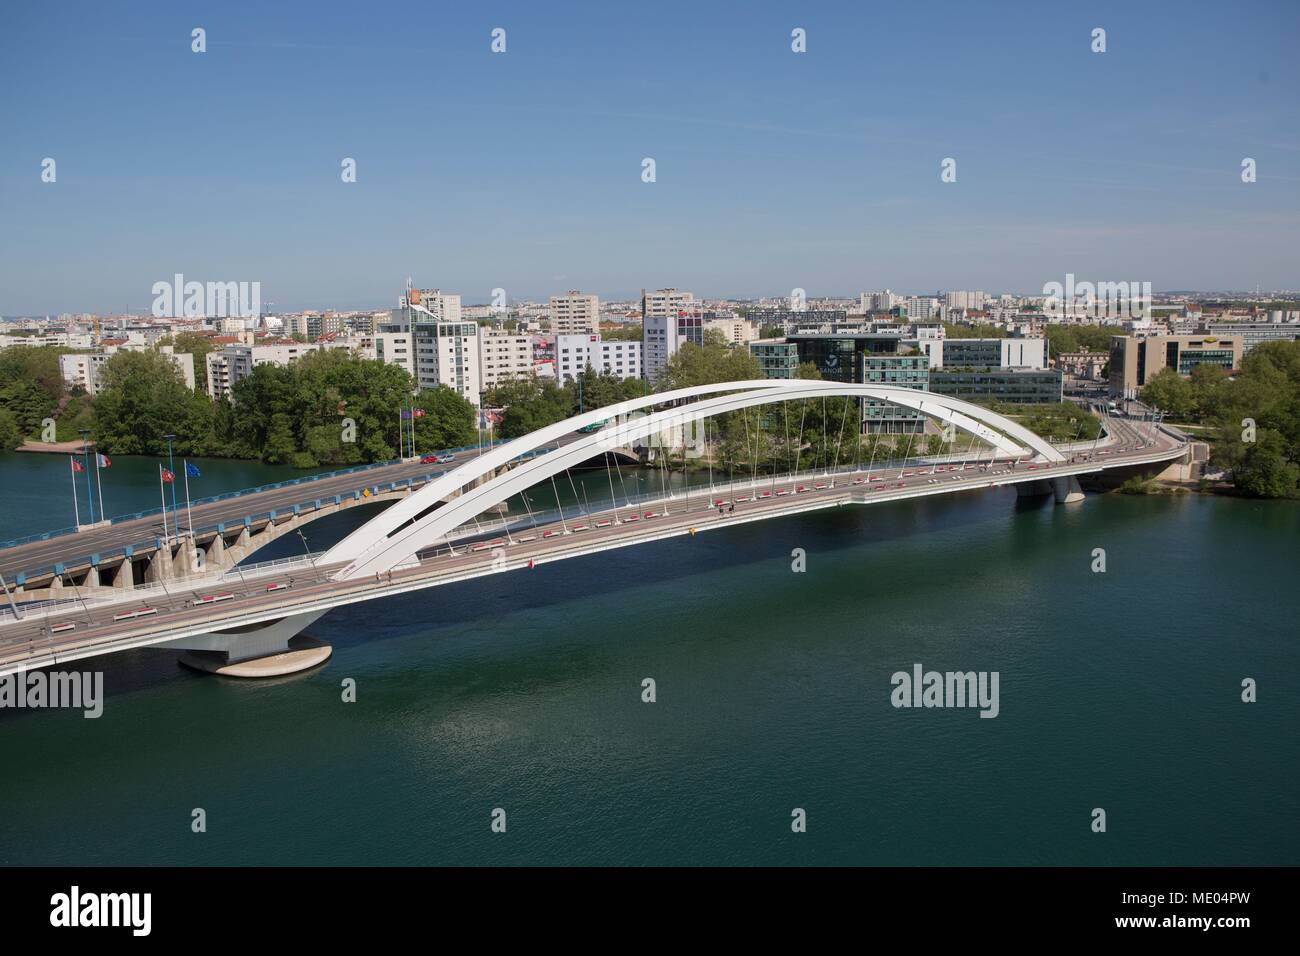 France, Lyon, Musée des Confluences, architect : Agence Coop Himmelb(l)au, Pont Raymond Barre, Pont Pasteur over the Rhône Stock Photo